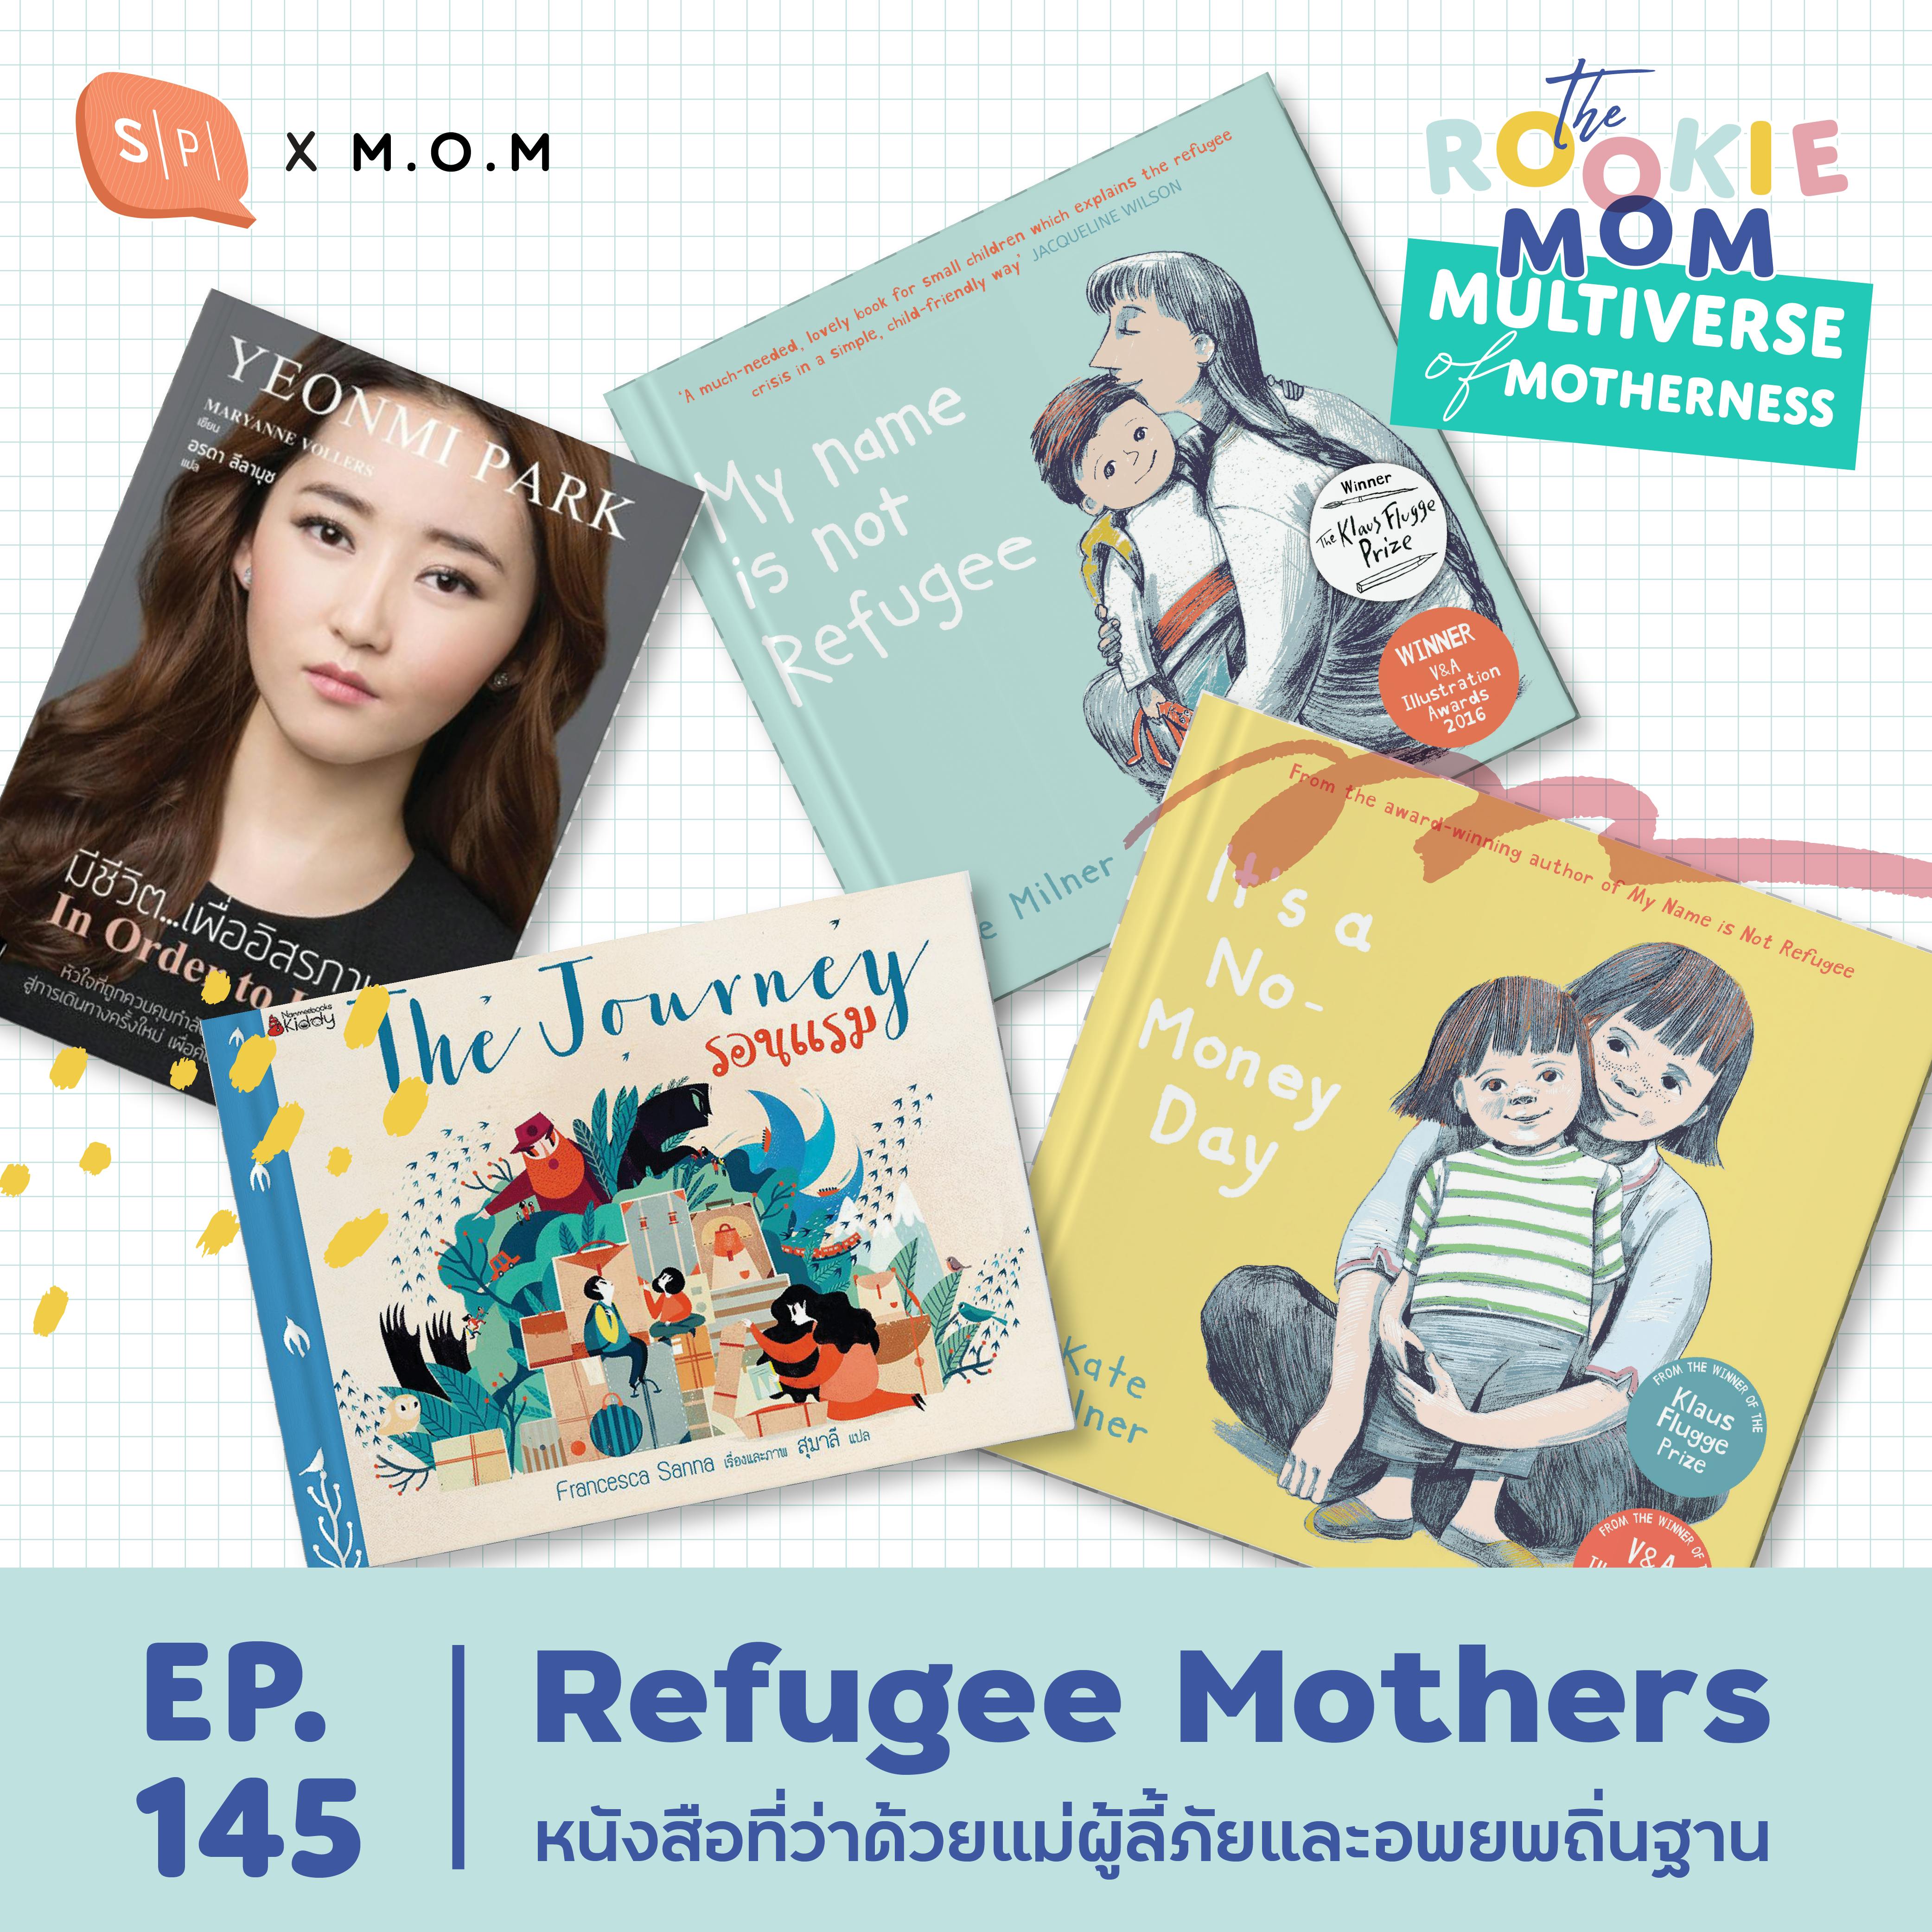 Refugee Mothers หนังสือที่ว่าด้วยแม่ผู้ลี้ภัยและอพยพถิ่นฐาน | EP145